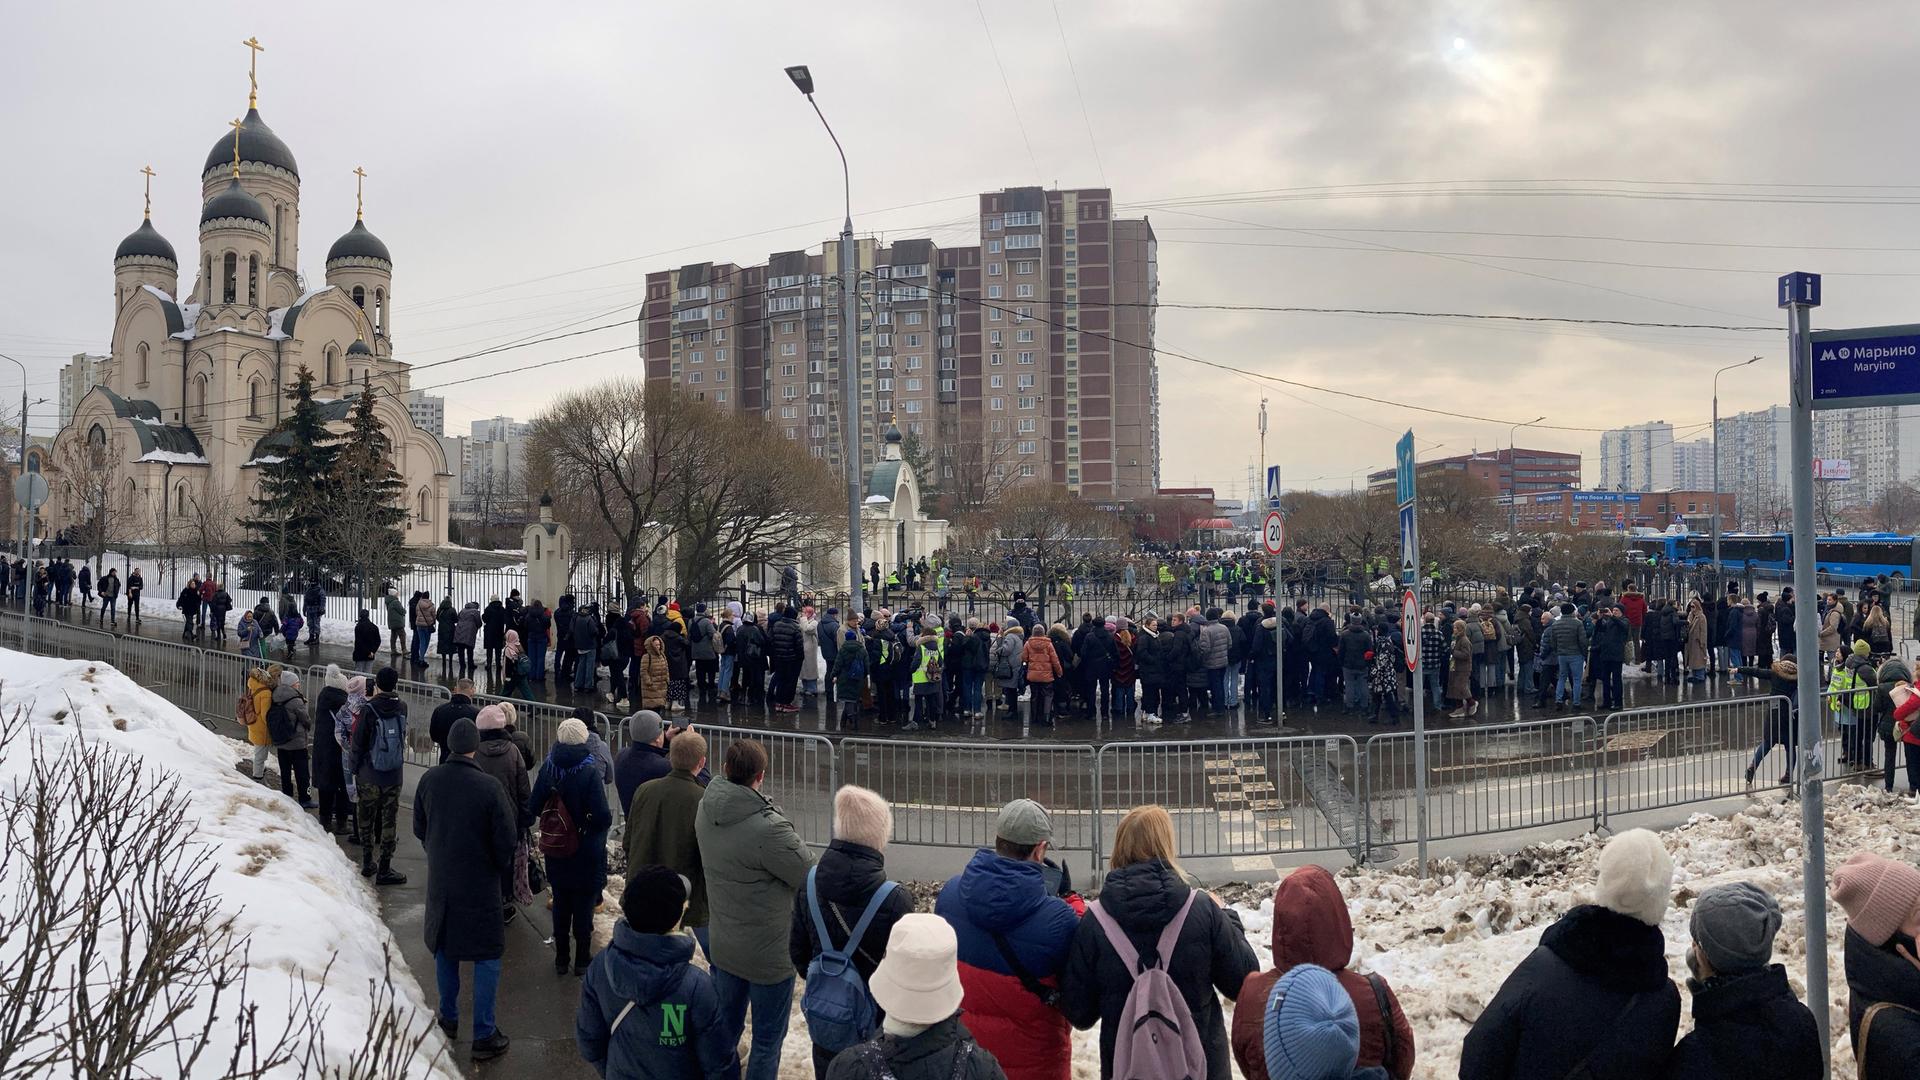 Russland - Massive Polizeipräsenz vor Trauerfeier für Nawalny - hunderte Menschen versammeln sich trotzdem